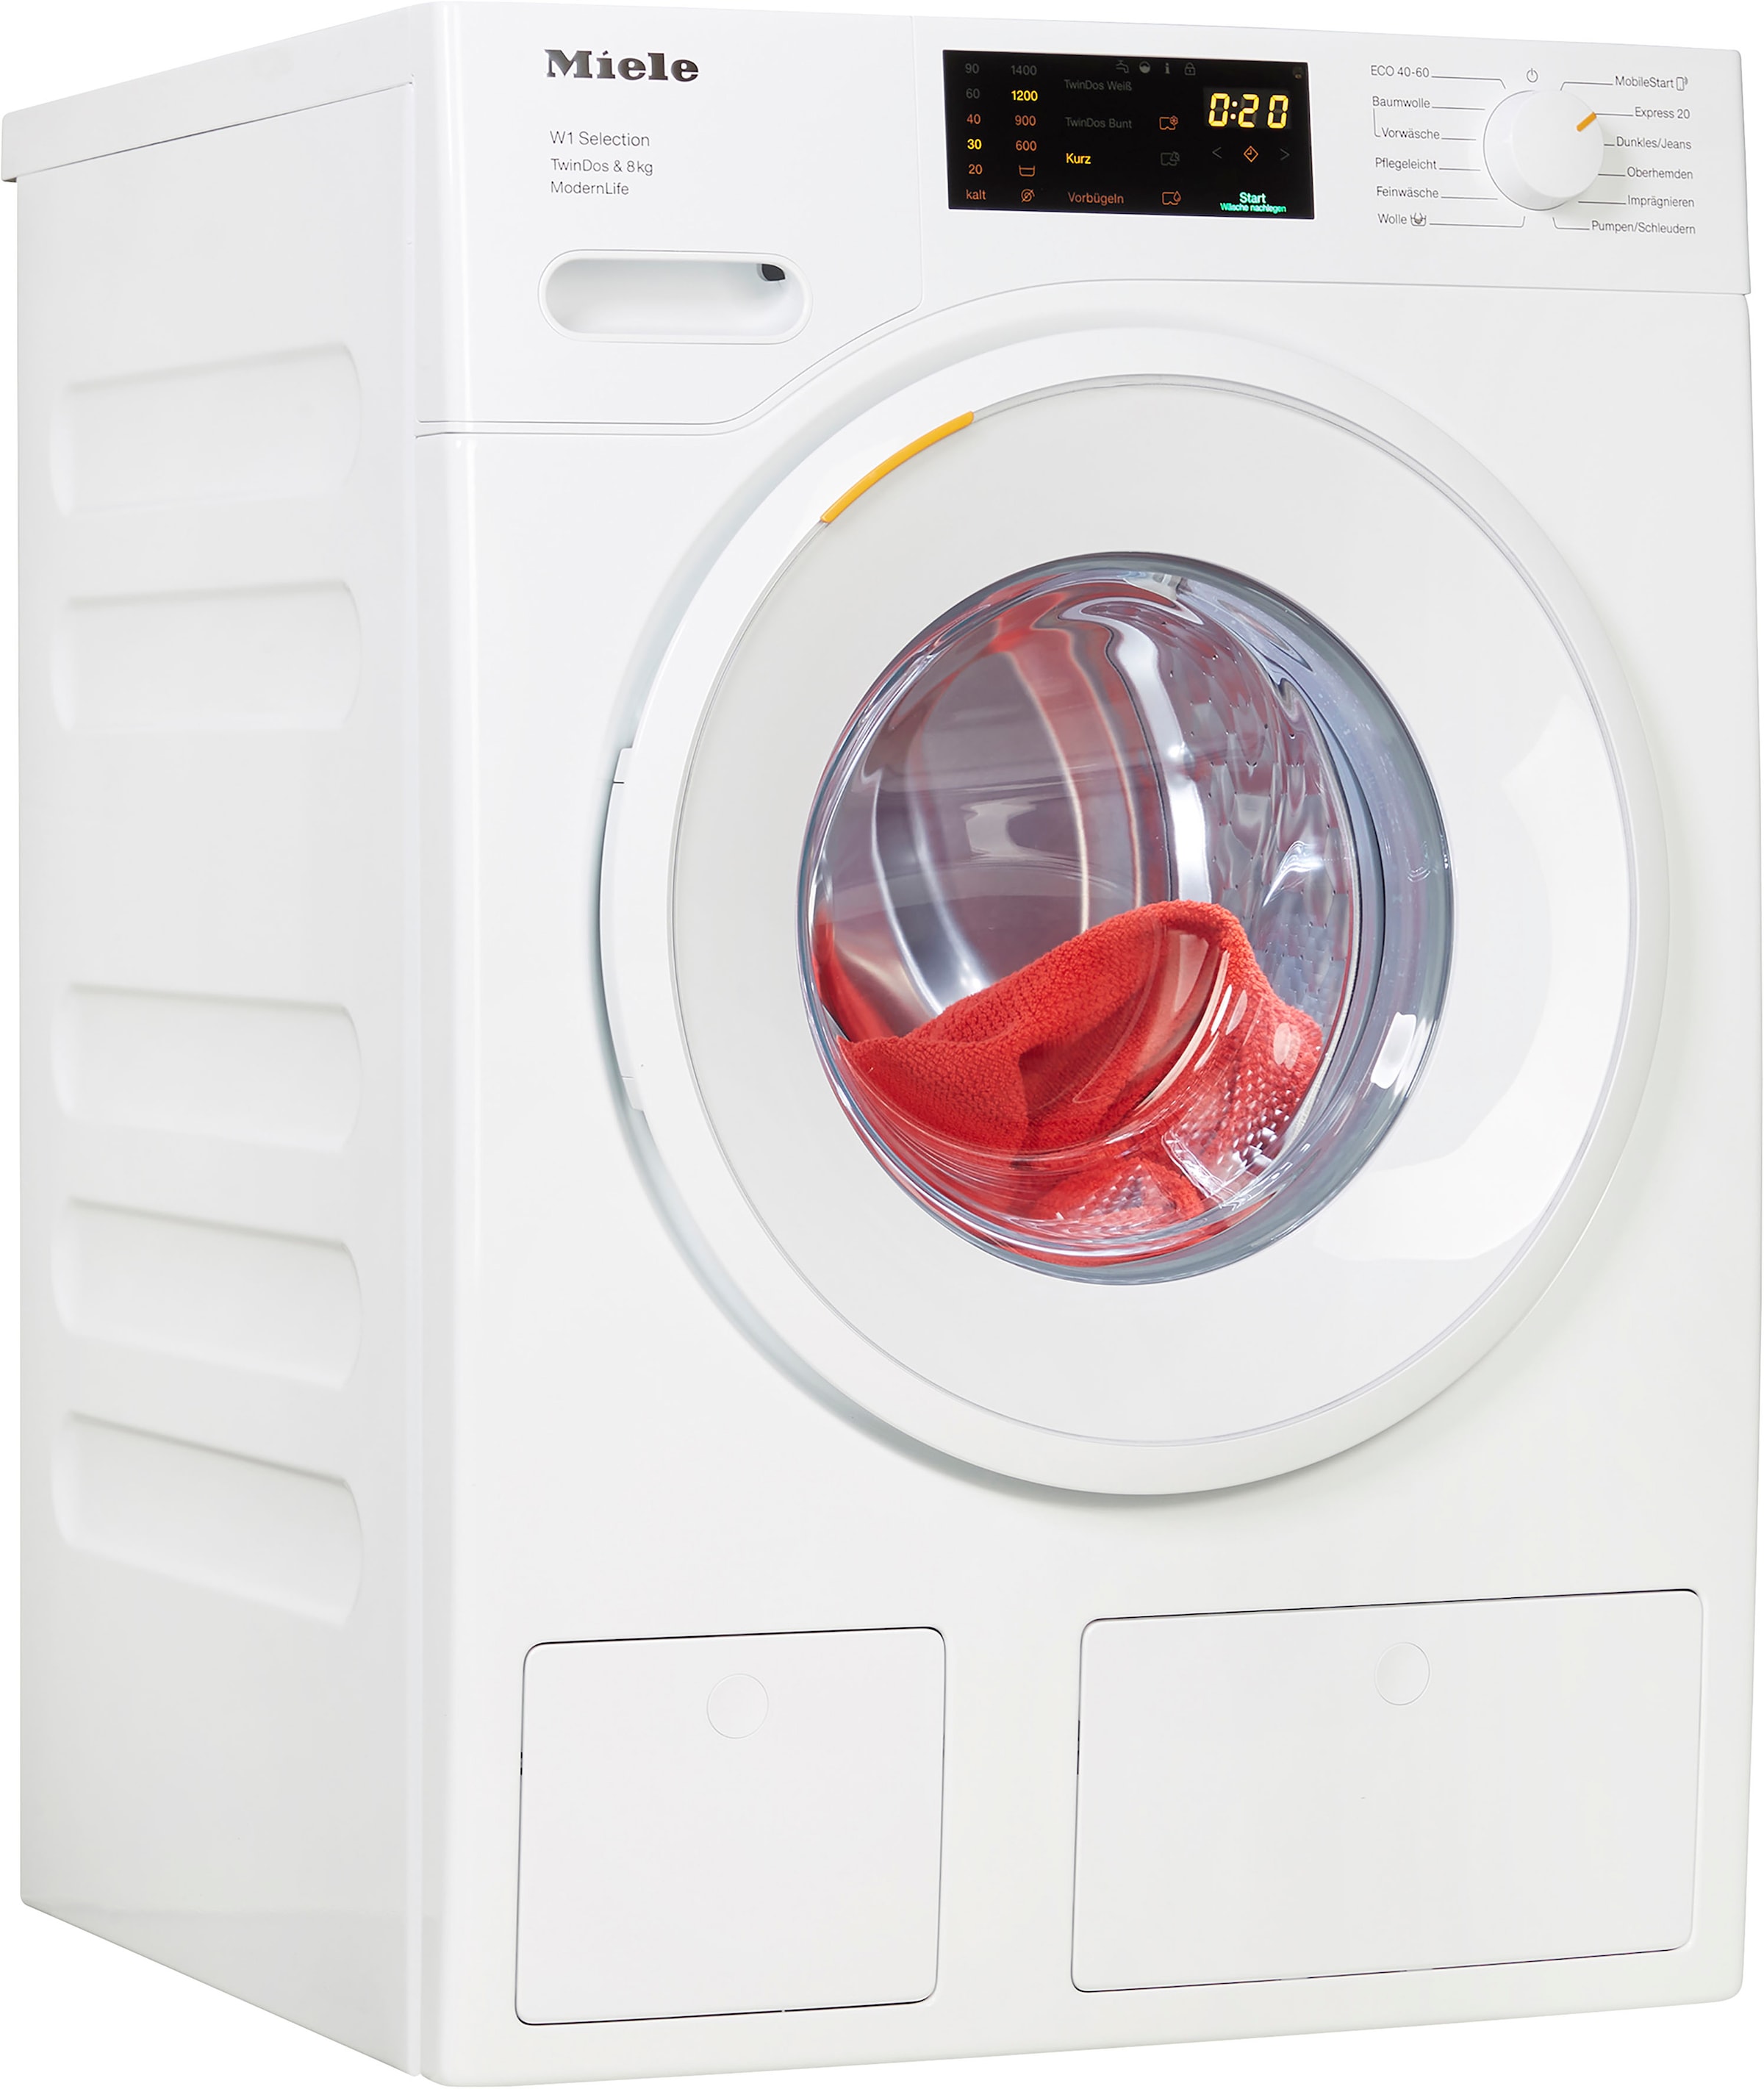 Miele Waschmaschine »WSD663 WCS TDos & 8kg«, ModernLife, WSD663 WCS TDos&8kg, 8 kg, 1400 U/min, TwinDos zur automatischen Waschmitteldosierung